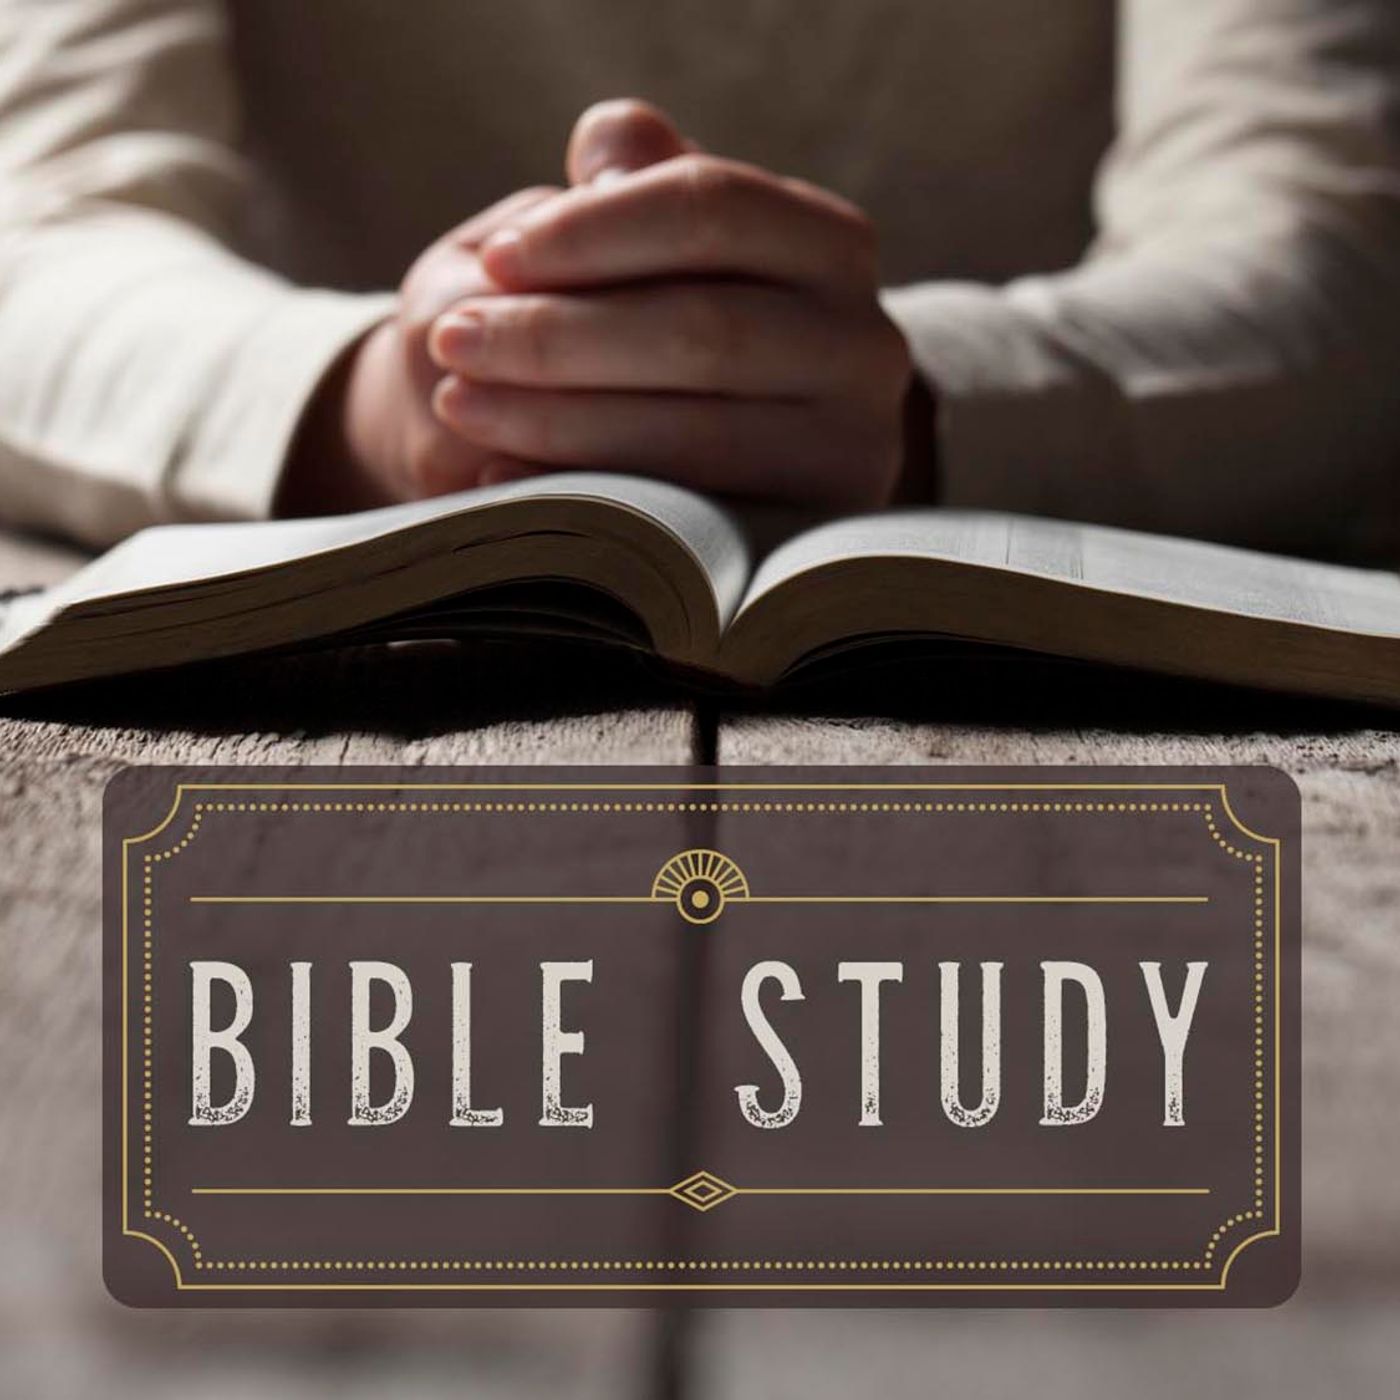 Chapter Summary Method of Bible Study